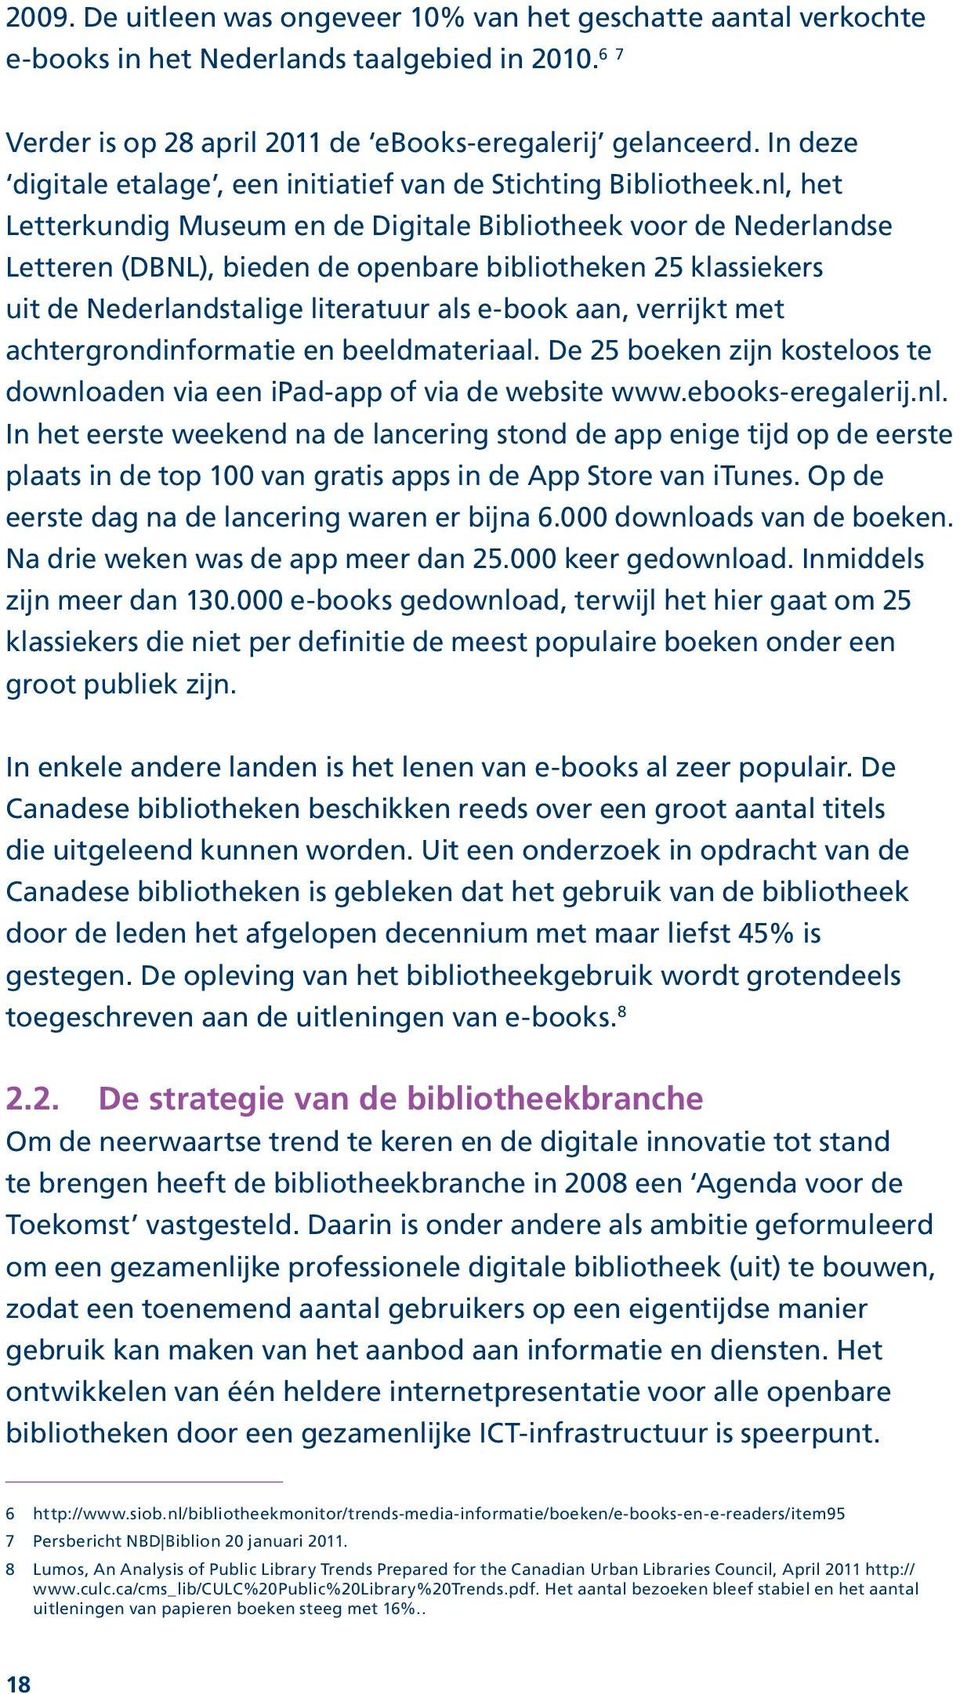 nl, het Letterkundig Museum en de Digitale Bibliotheek voor de Nederlandse Letteren (DBNL), bieden de openbare bibliotheken 25 klassiekers uit de Nederlandstalige literatuur als e-book aan, verrijkt